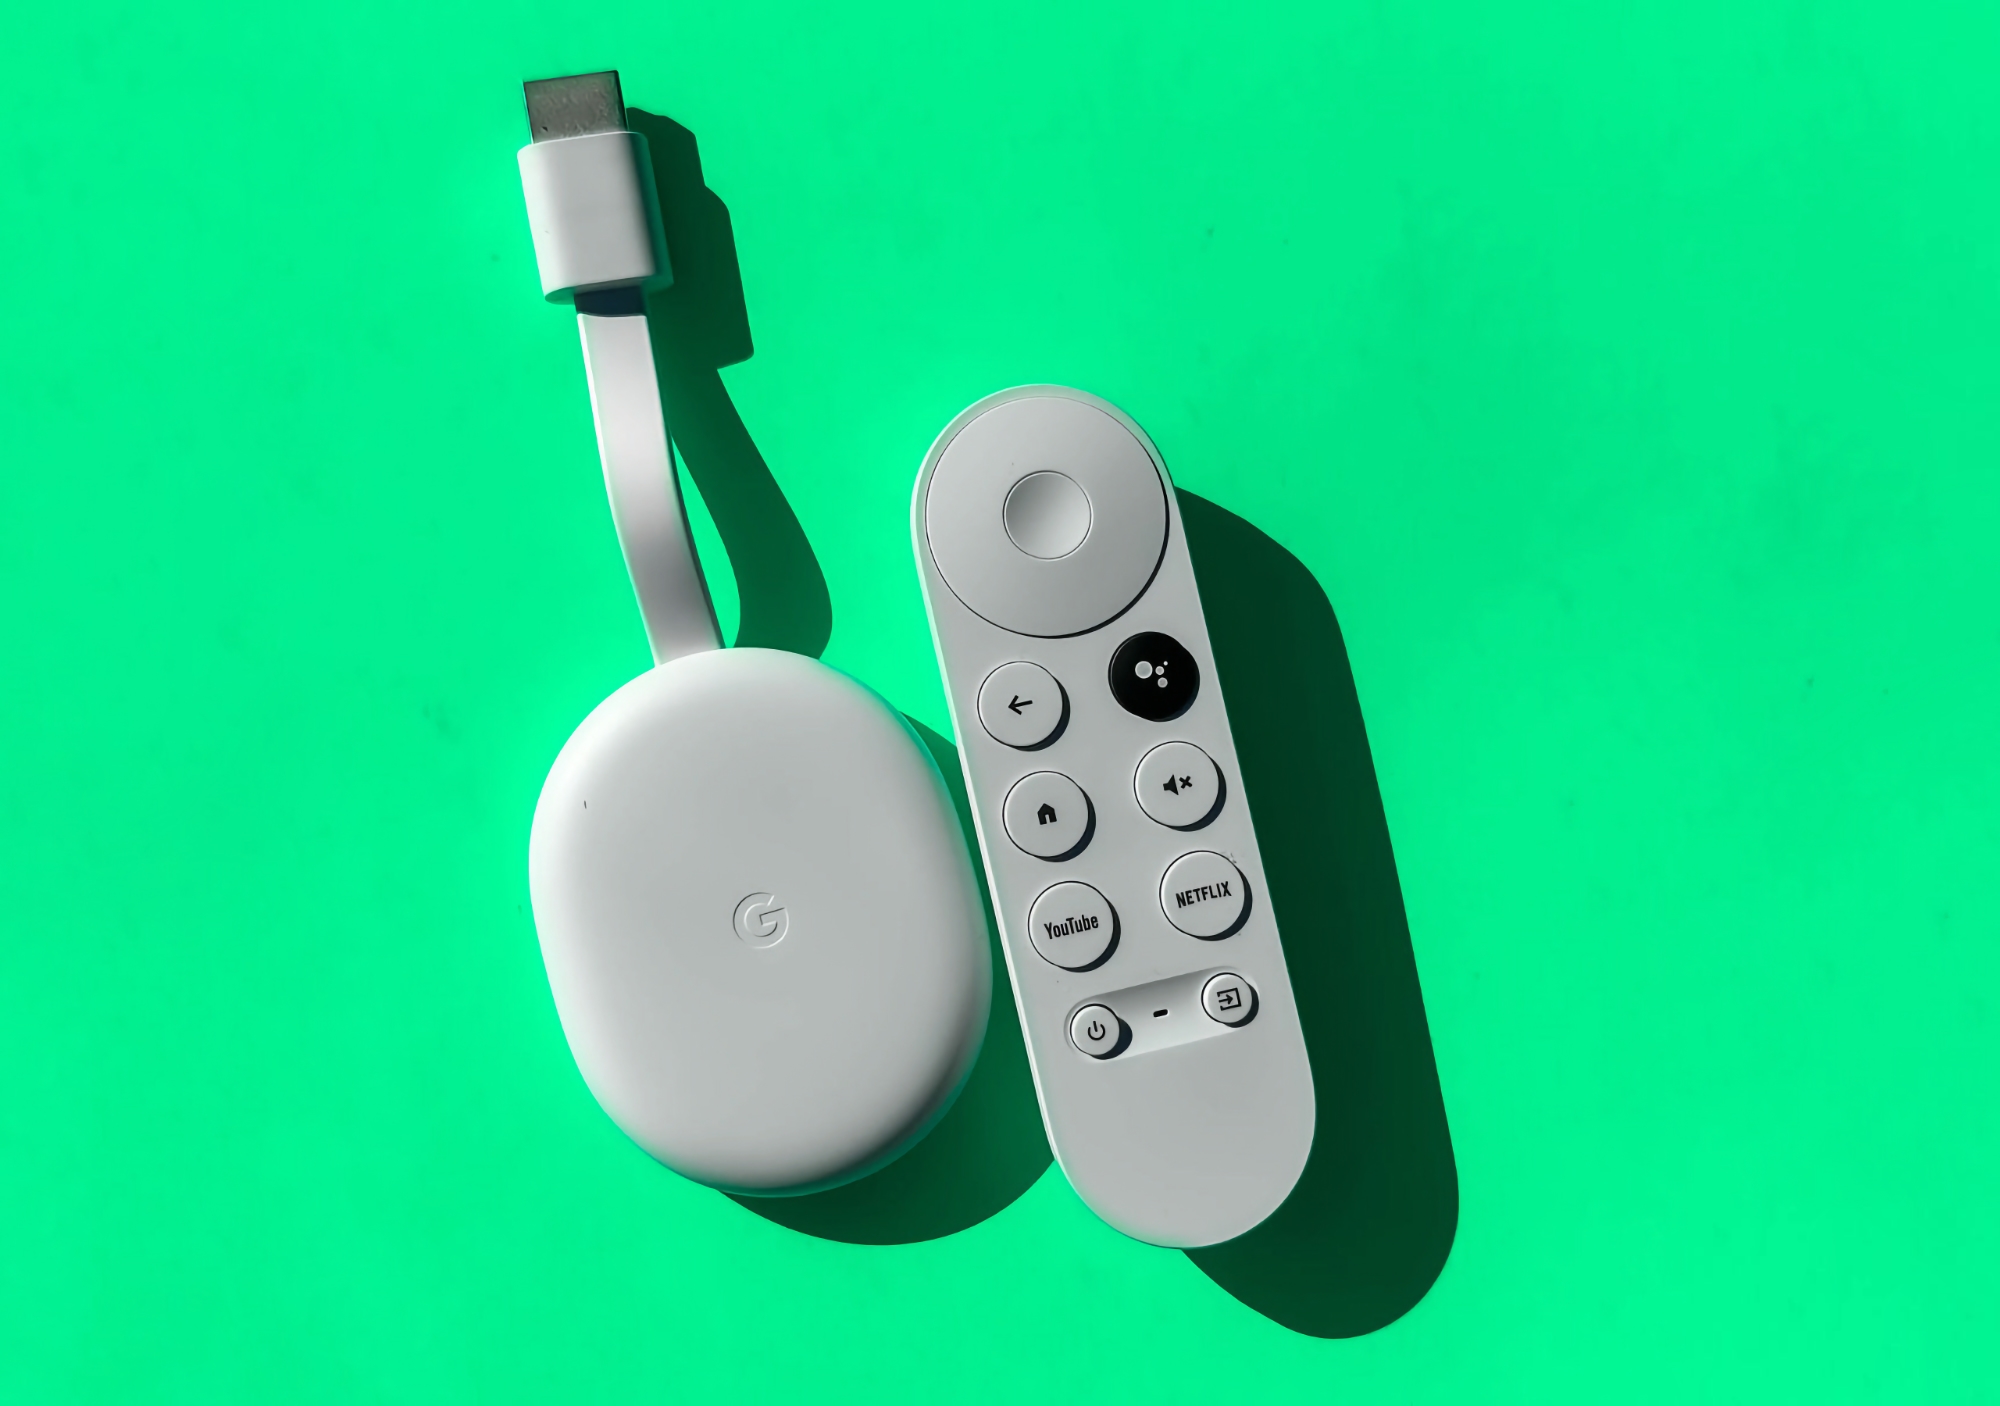 Chromecast mit Google TV (4K) ist bei Amazon mit einem Rabatt von $12 erhältlich